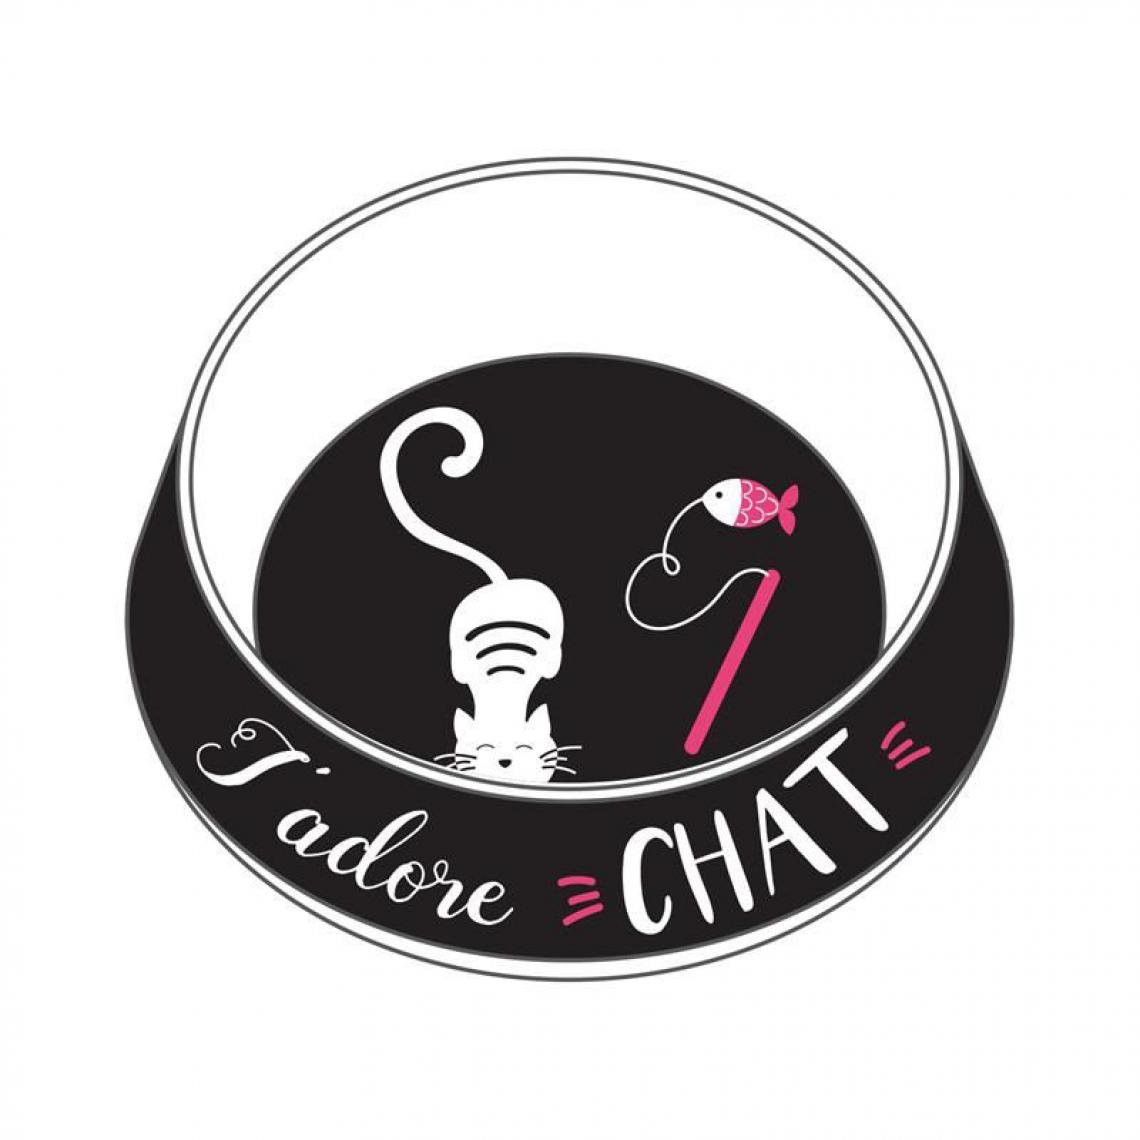 Paris Prix - Gamelle pour Chat J'adore 19cm Noir & Blanc - Gamelle pour chat